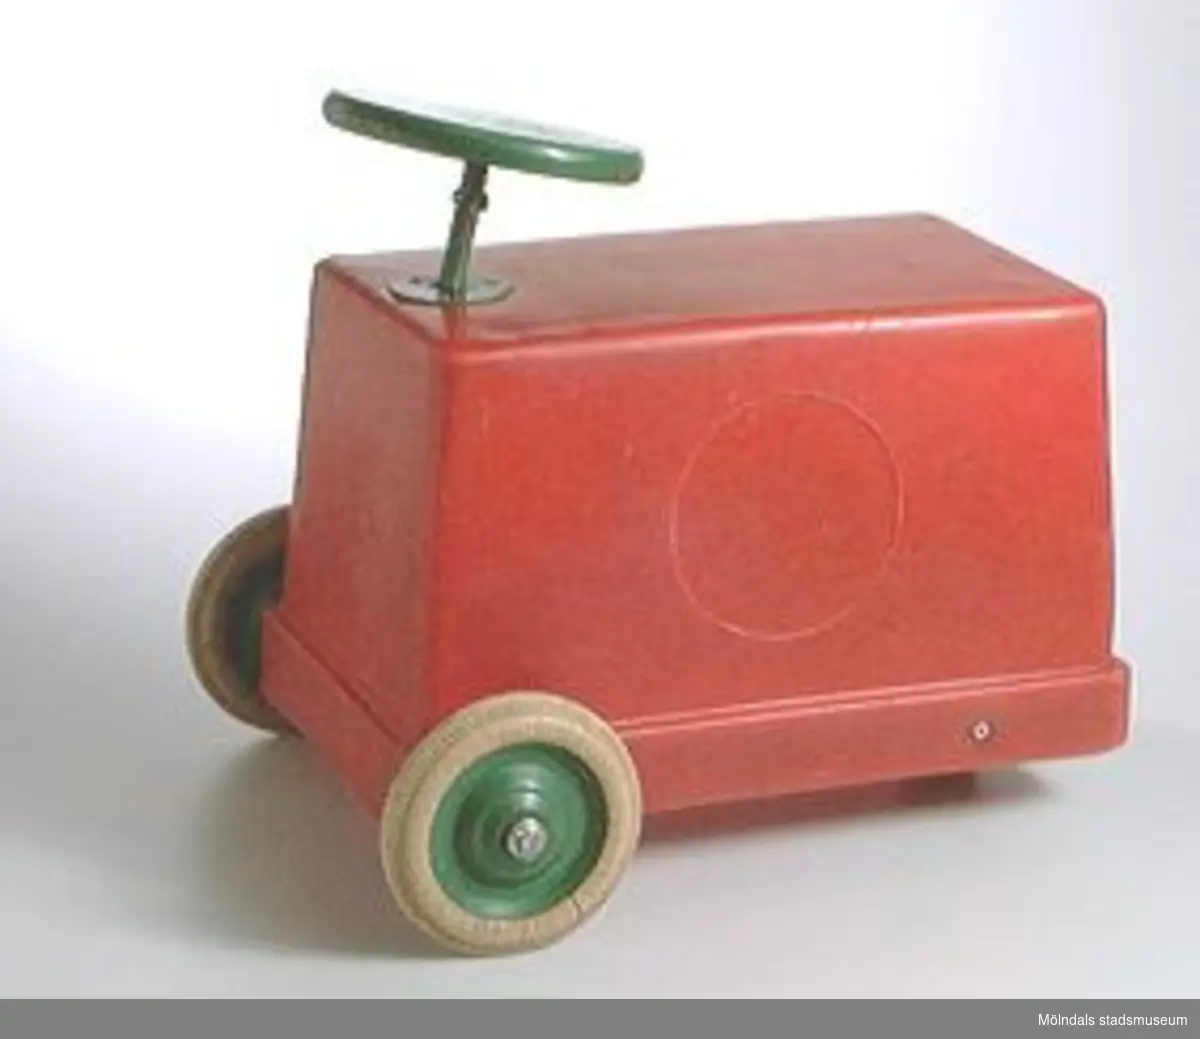 Röd åkbar leksaksbil i röd plast. Svartmålad träratt och gummihjul.